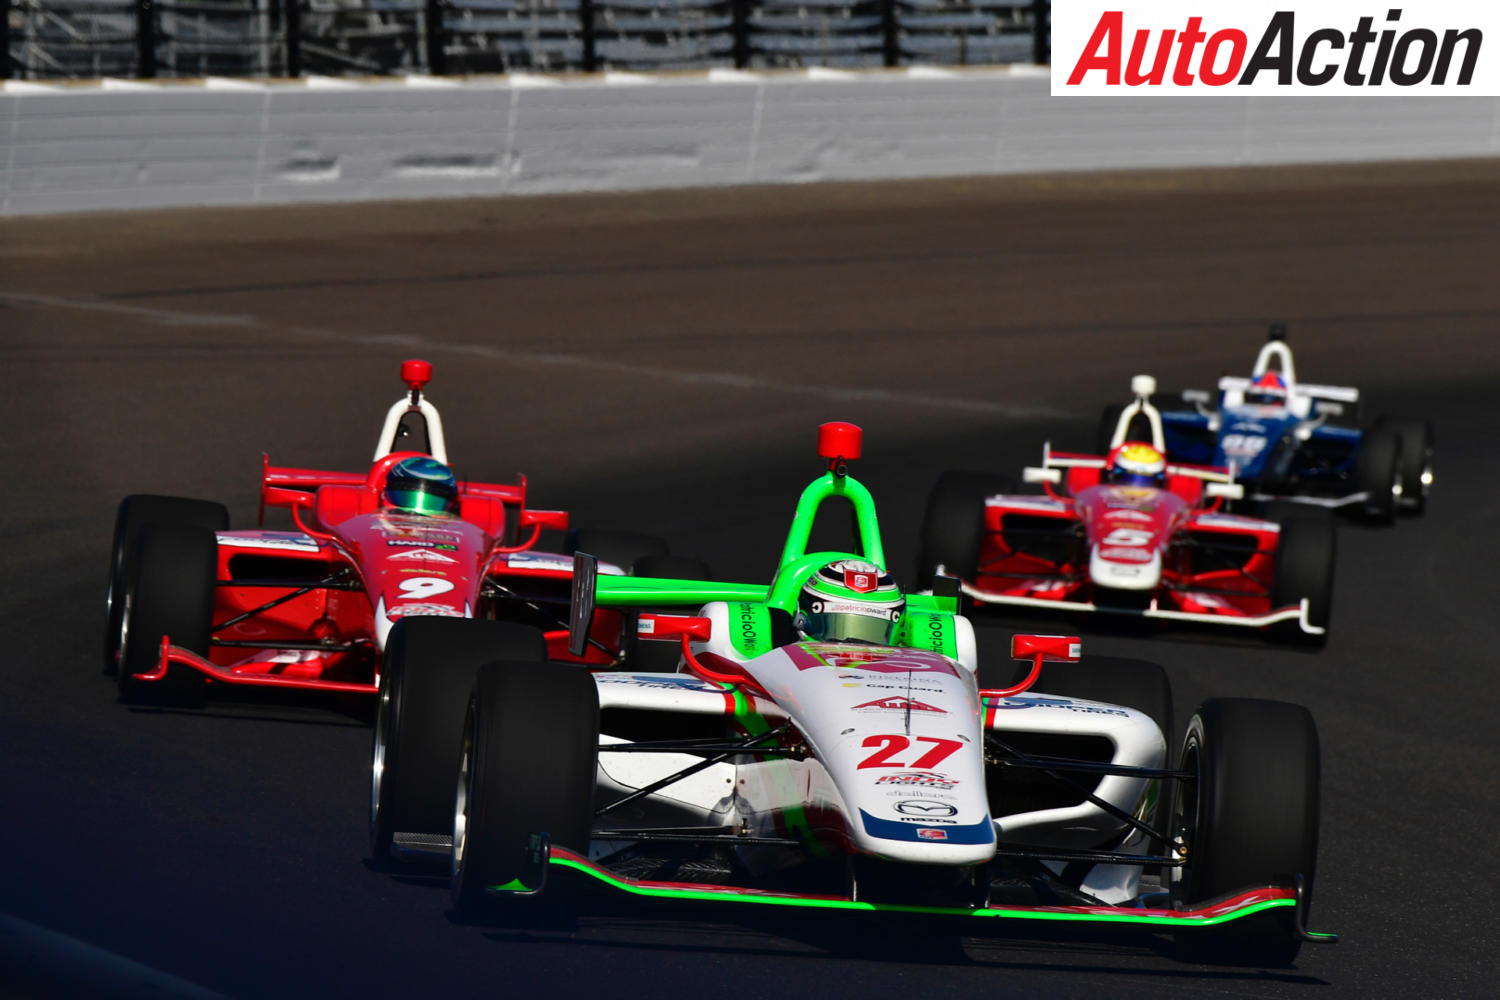 IndyCar to take over feeder series - Image: Motorsport Images